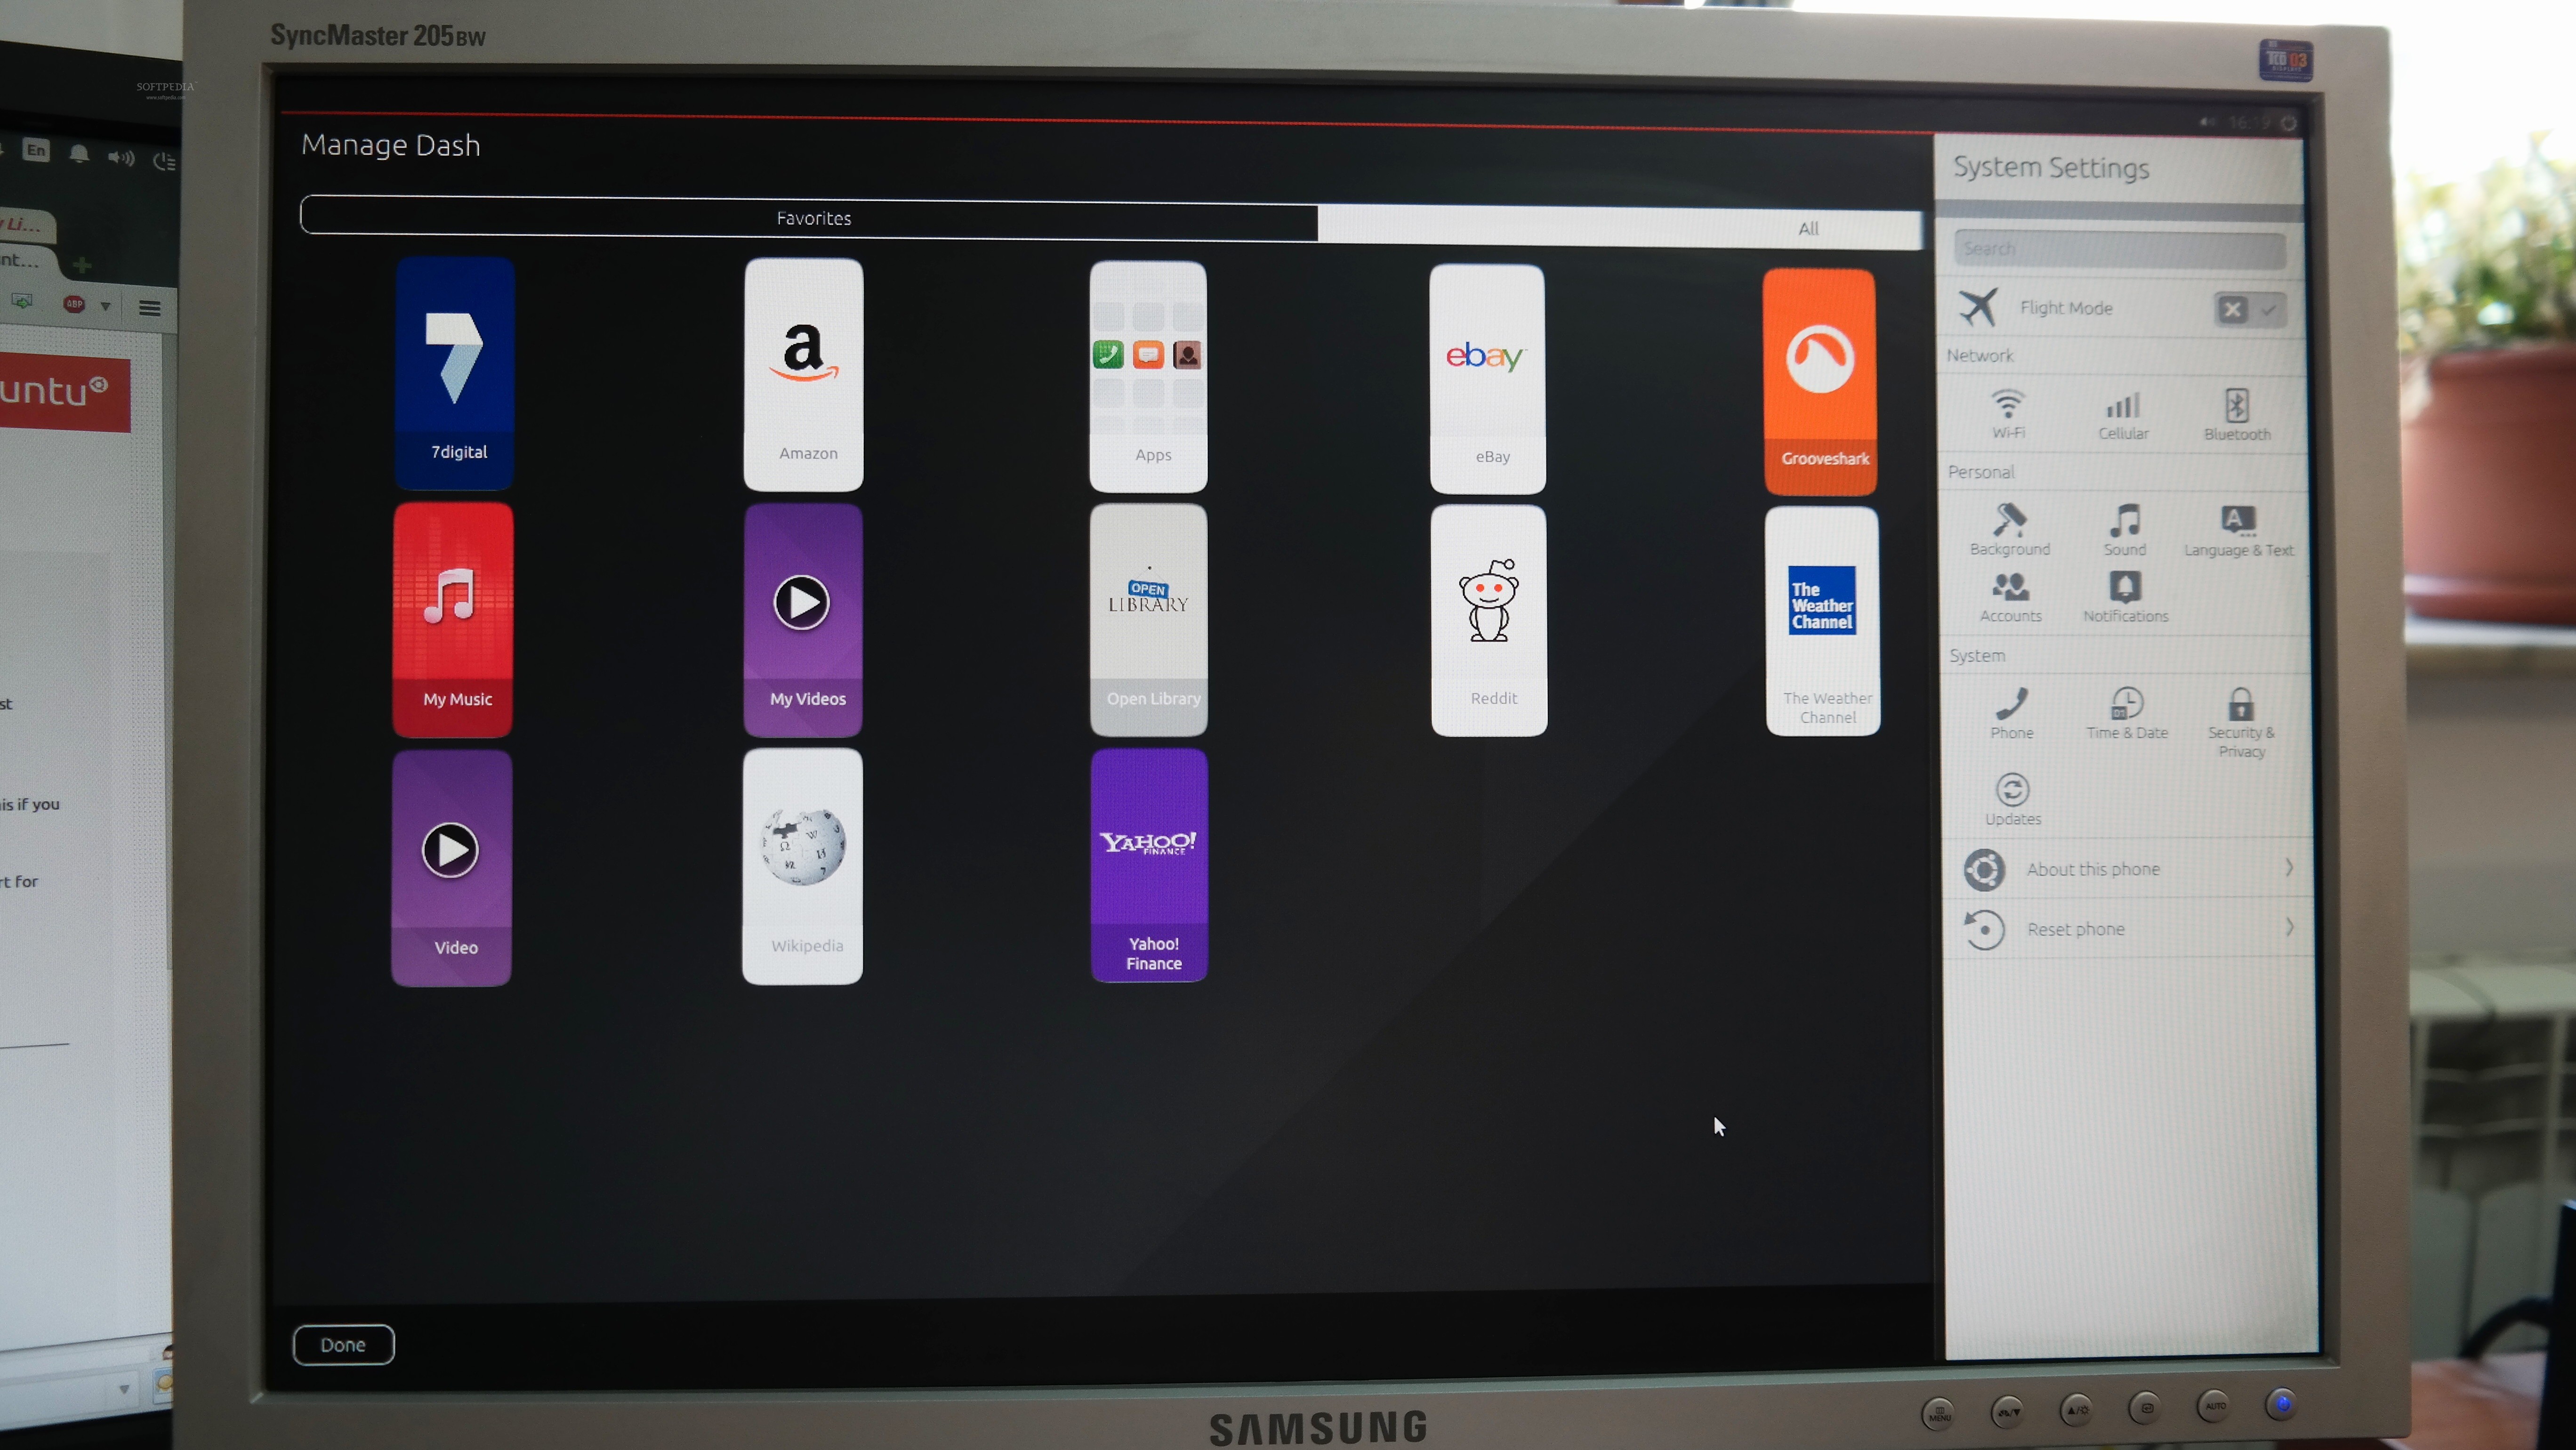 Future Ubuntu